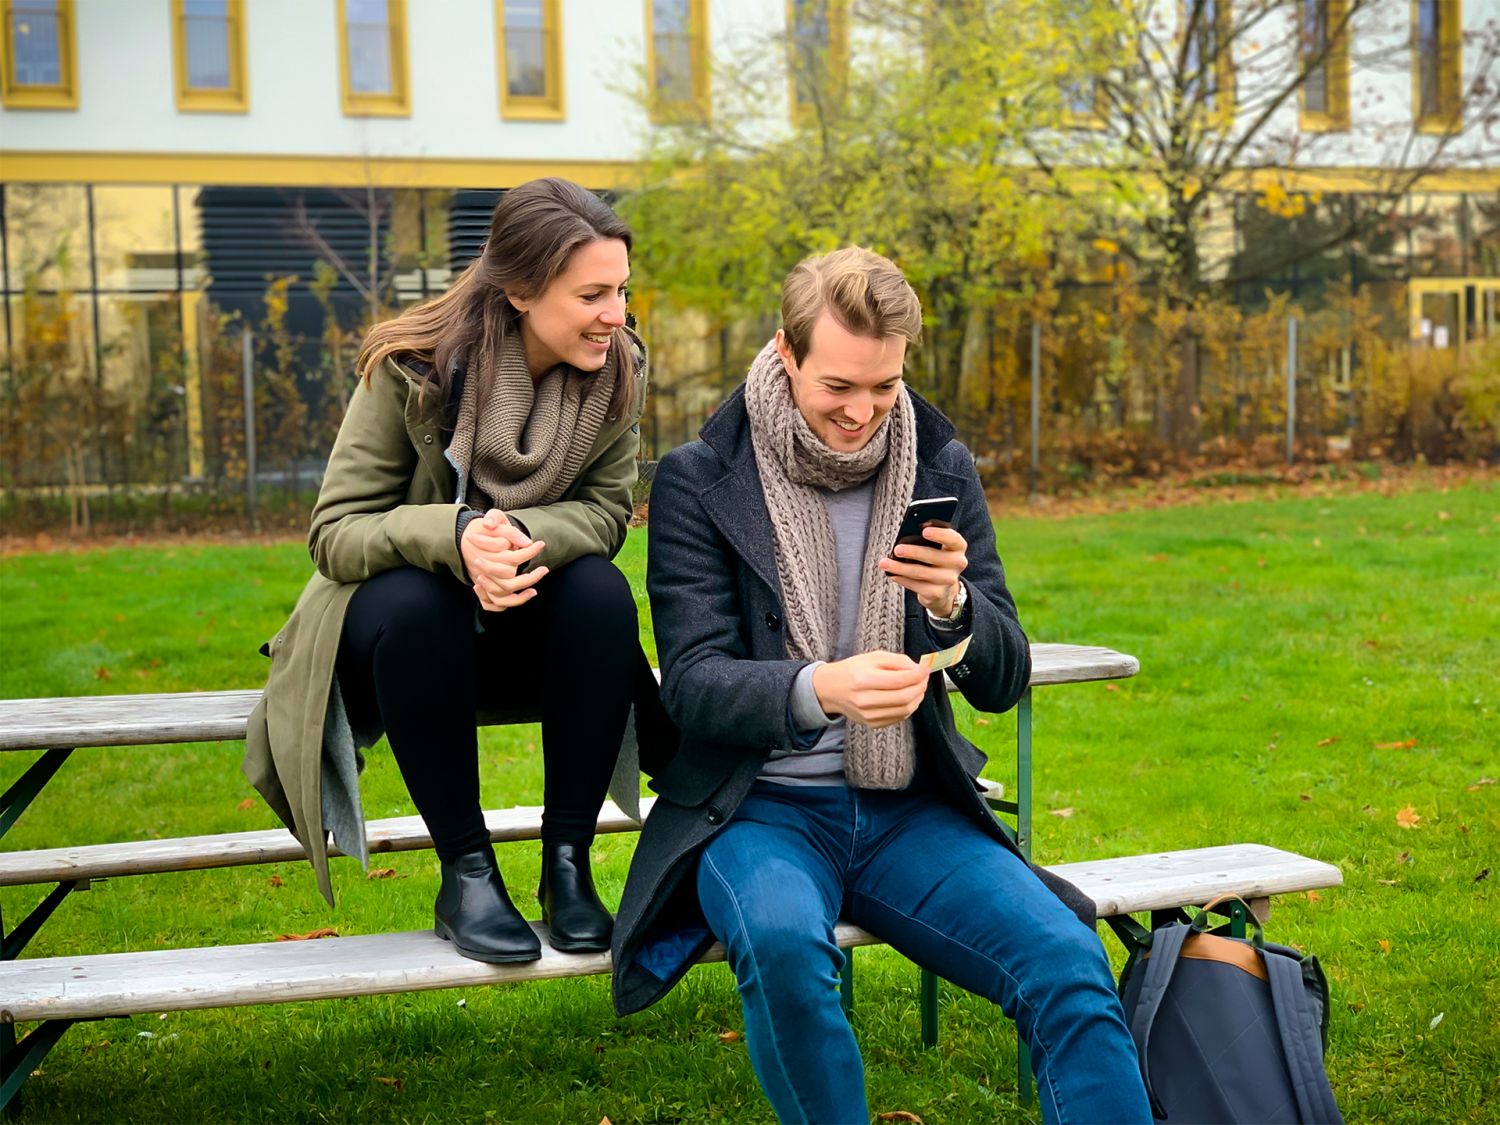 Zwei junge Menschen sitzen auf einer Bank im Grünen und schauen auf ein Smartphone.